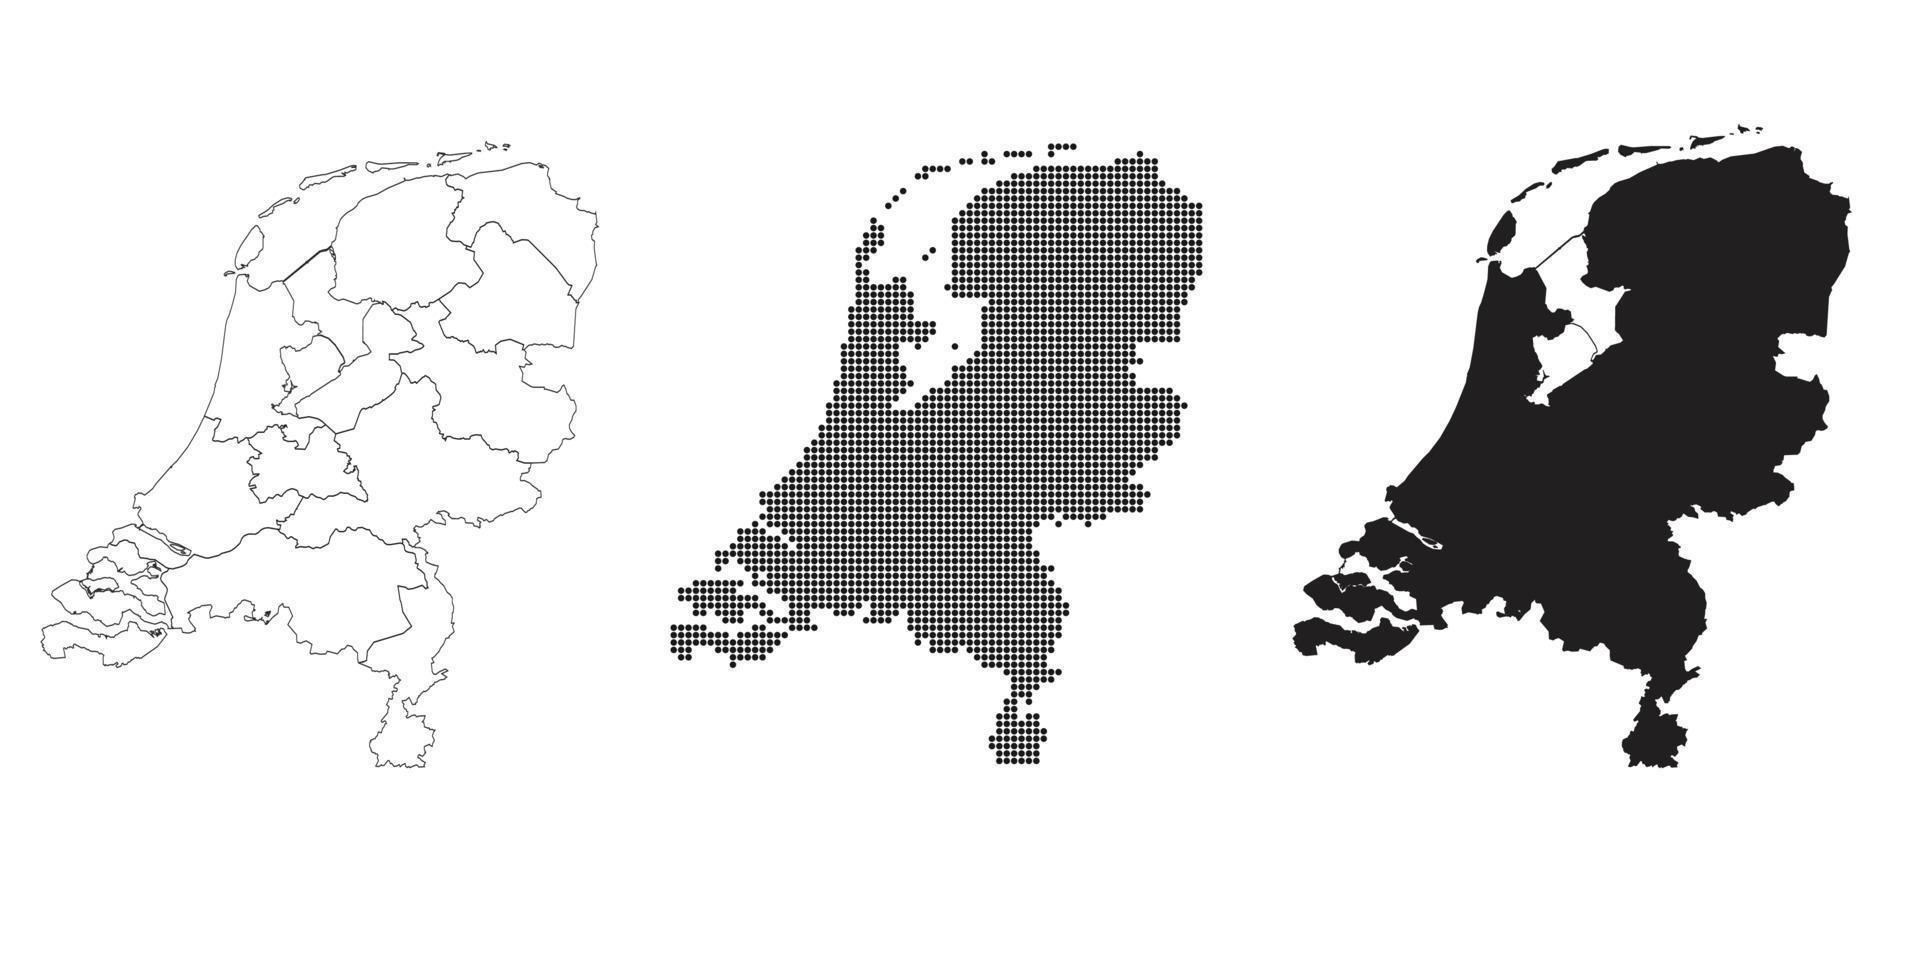 nederländerna karta isolerad på en vit bakgrund. vektor